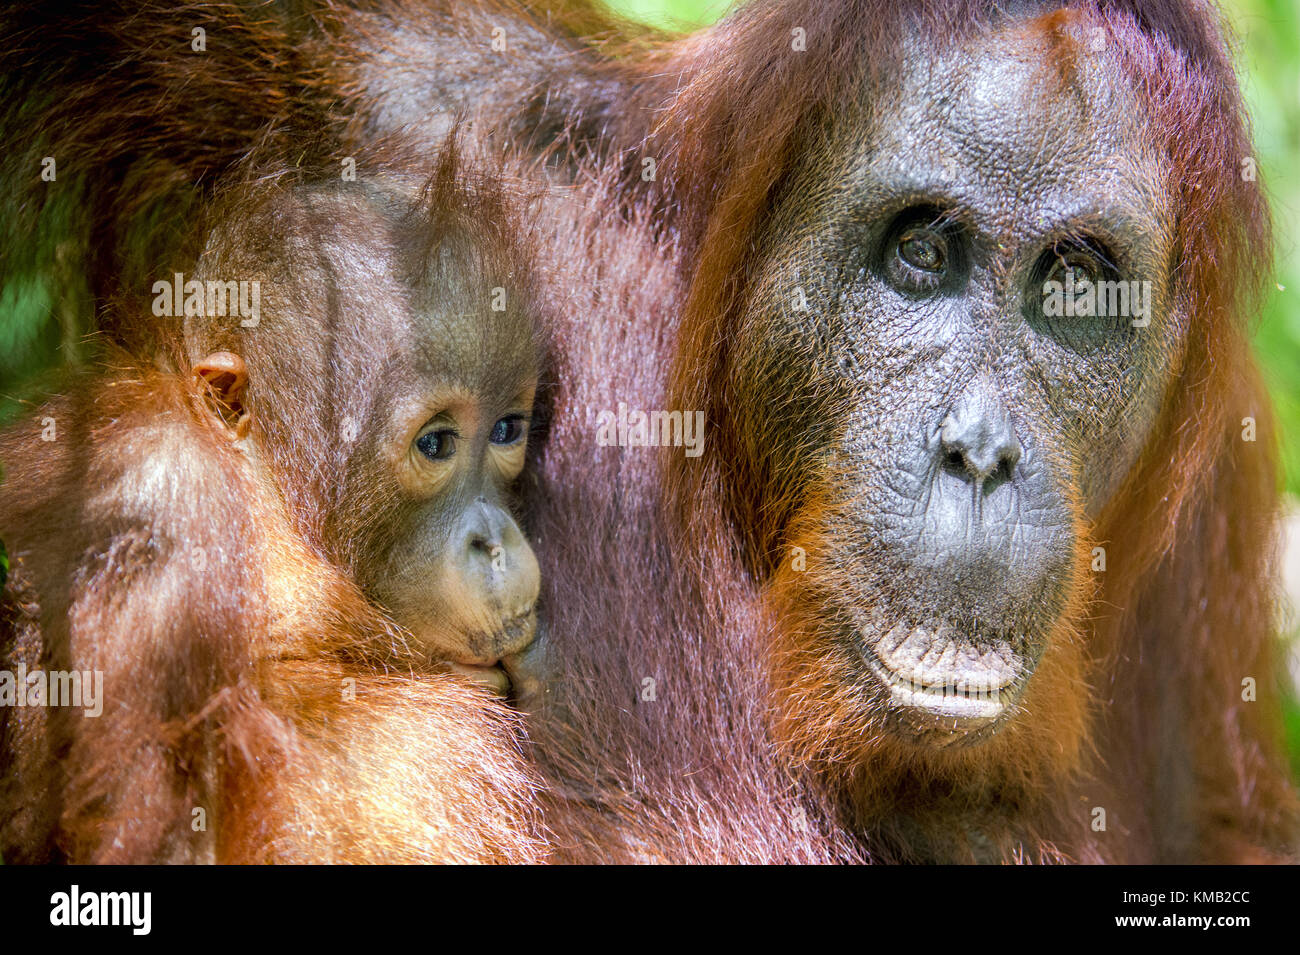 Ein Weibchen der Orang-utan mit einem Cub in einem natürlichen Lebensraum. Pongo pygmaeus wurmmbii. Regenwald von Borneo. Indonesien Stockfoto